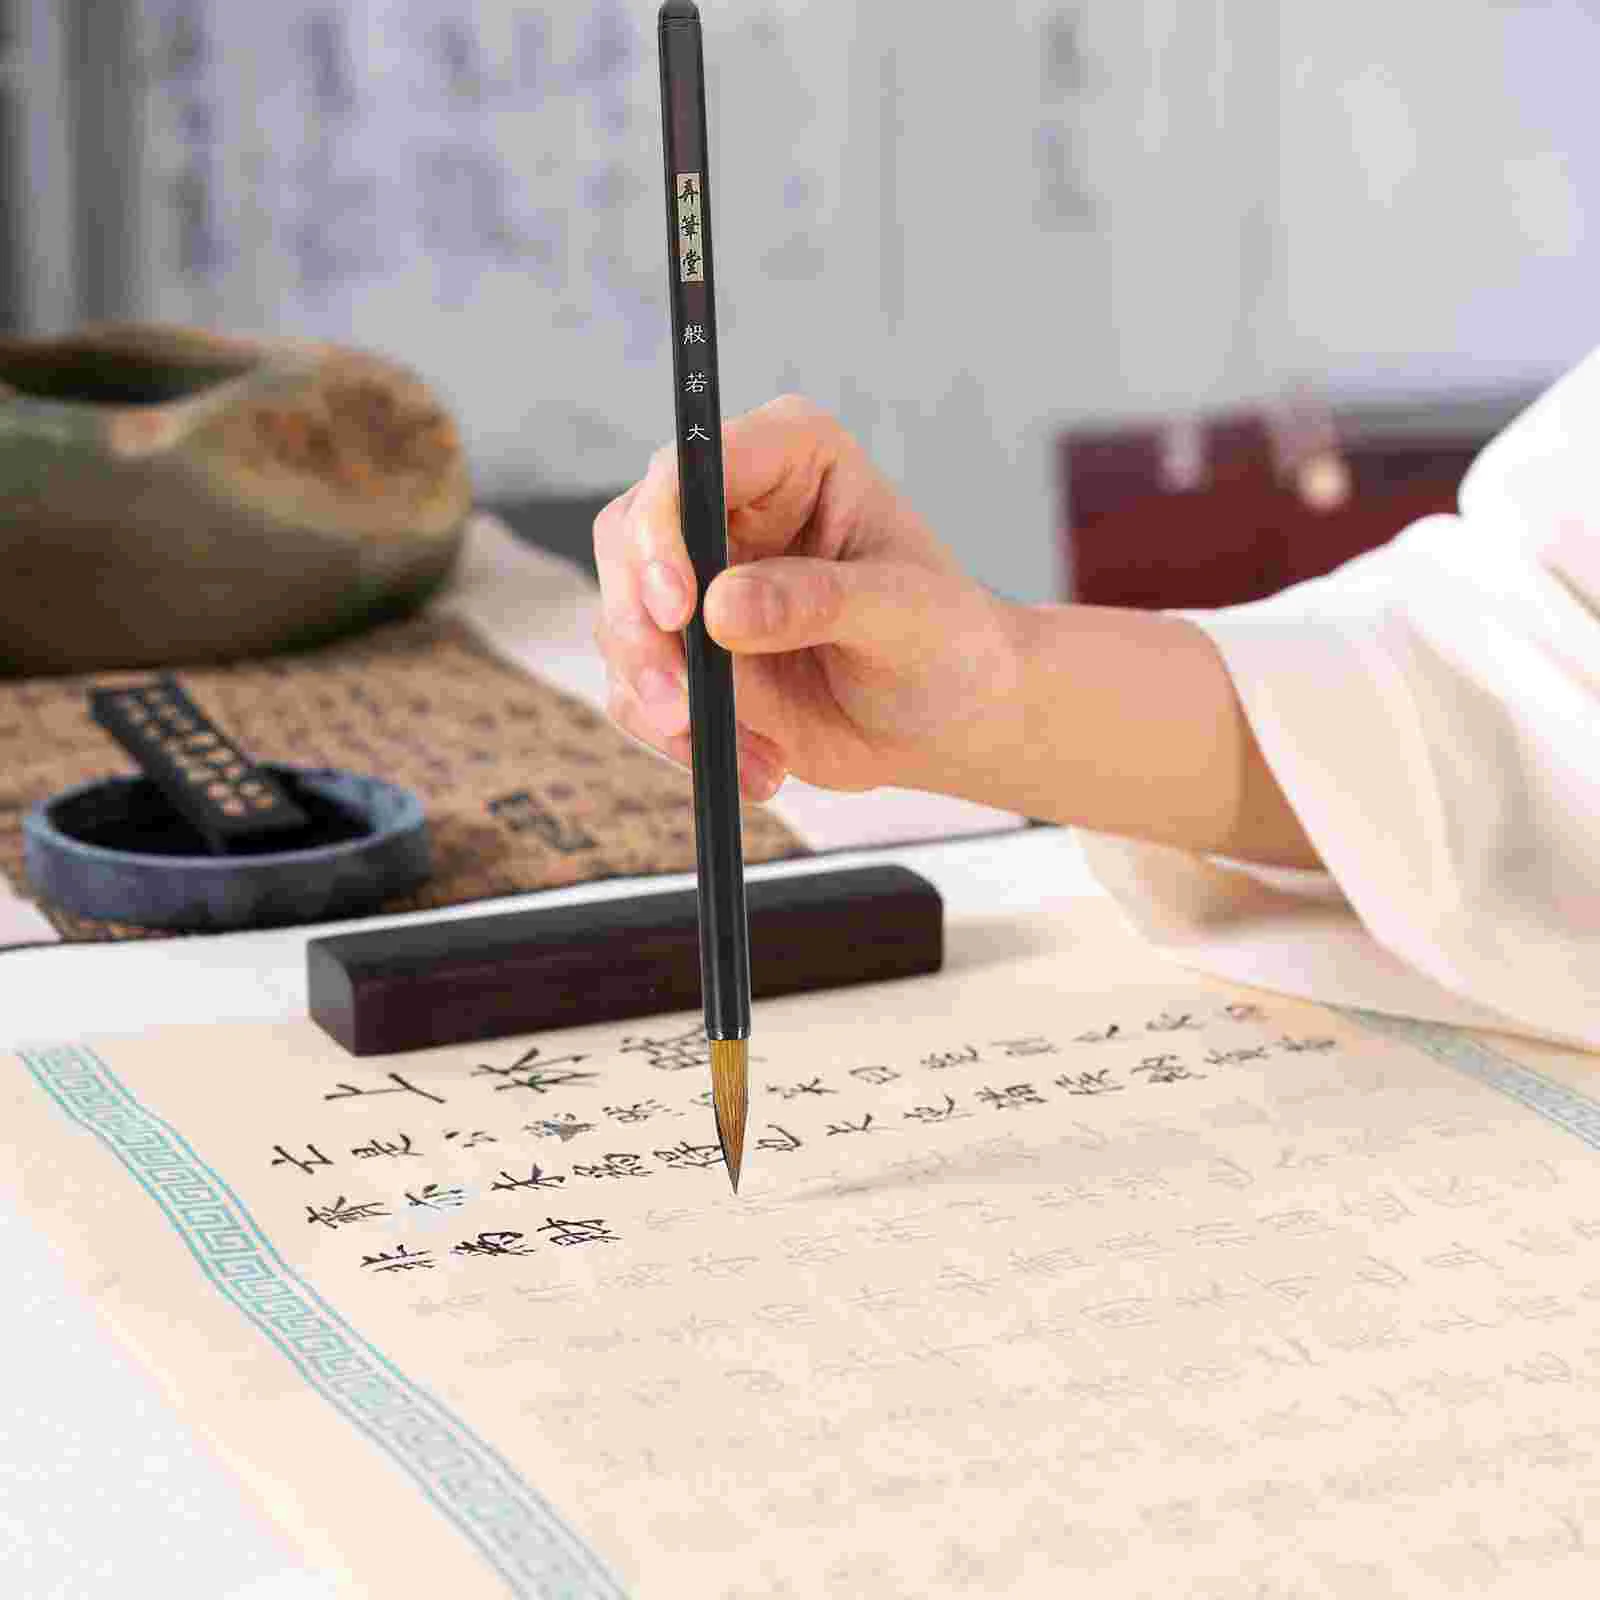 

3 шт. китайские кисти для рисования Суми, ручка для китайской каллиграфии, традиционный китайский набор